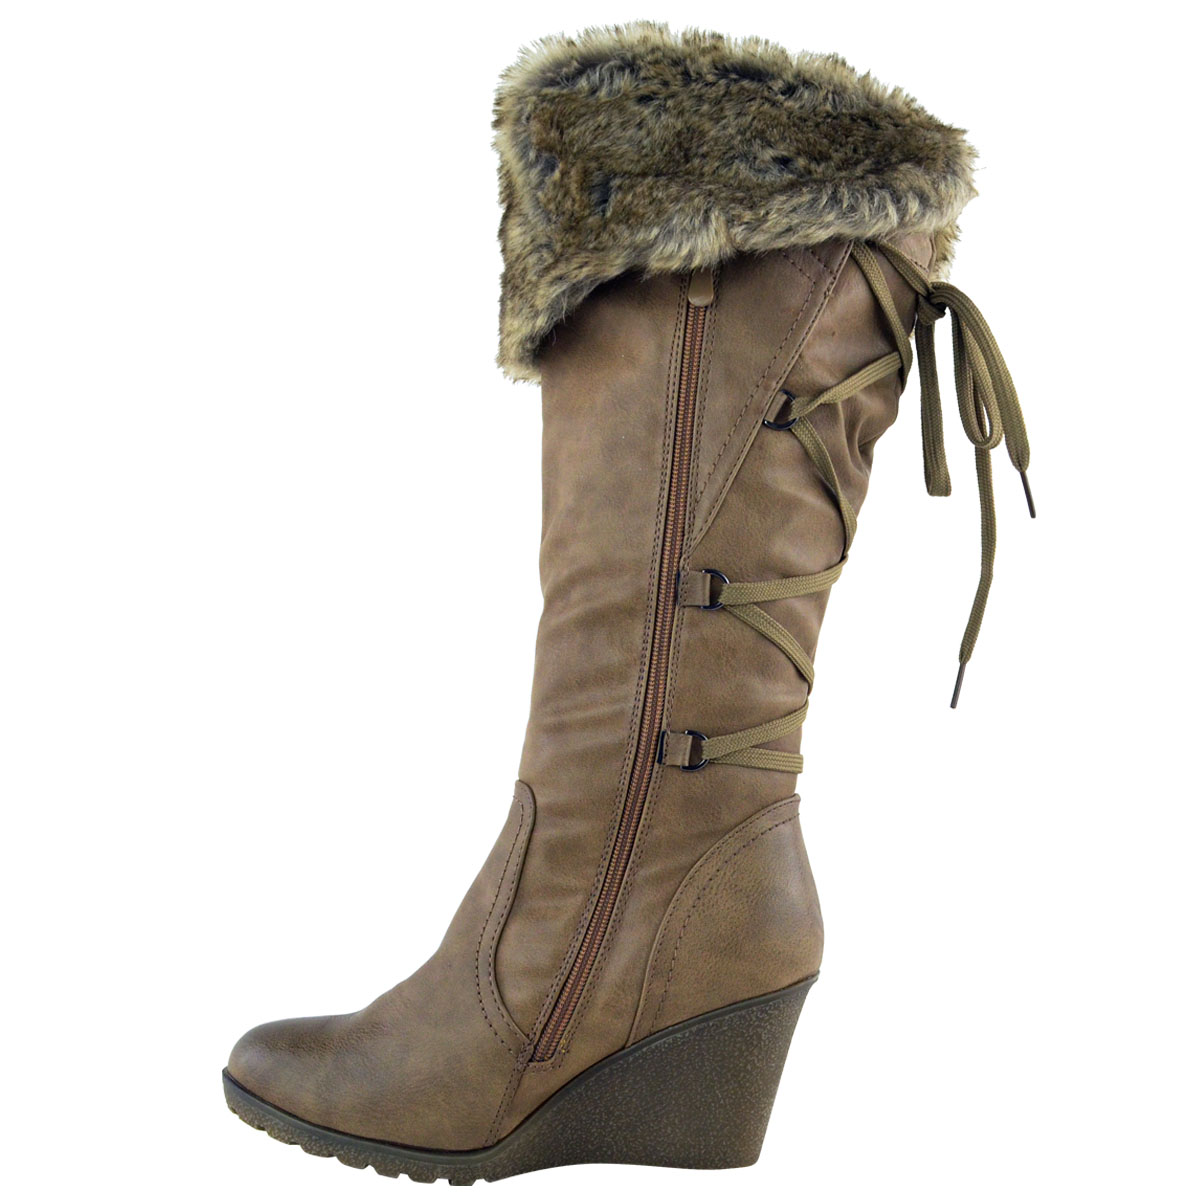 women's winter wedge boots